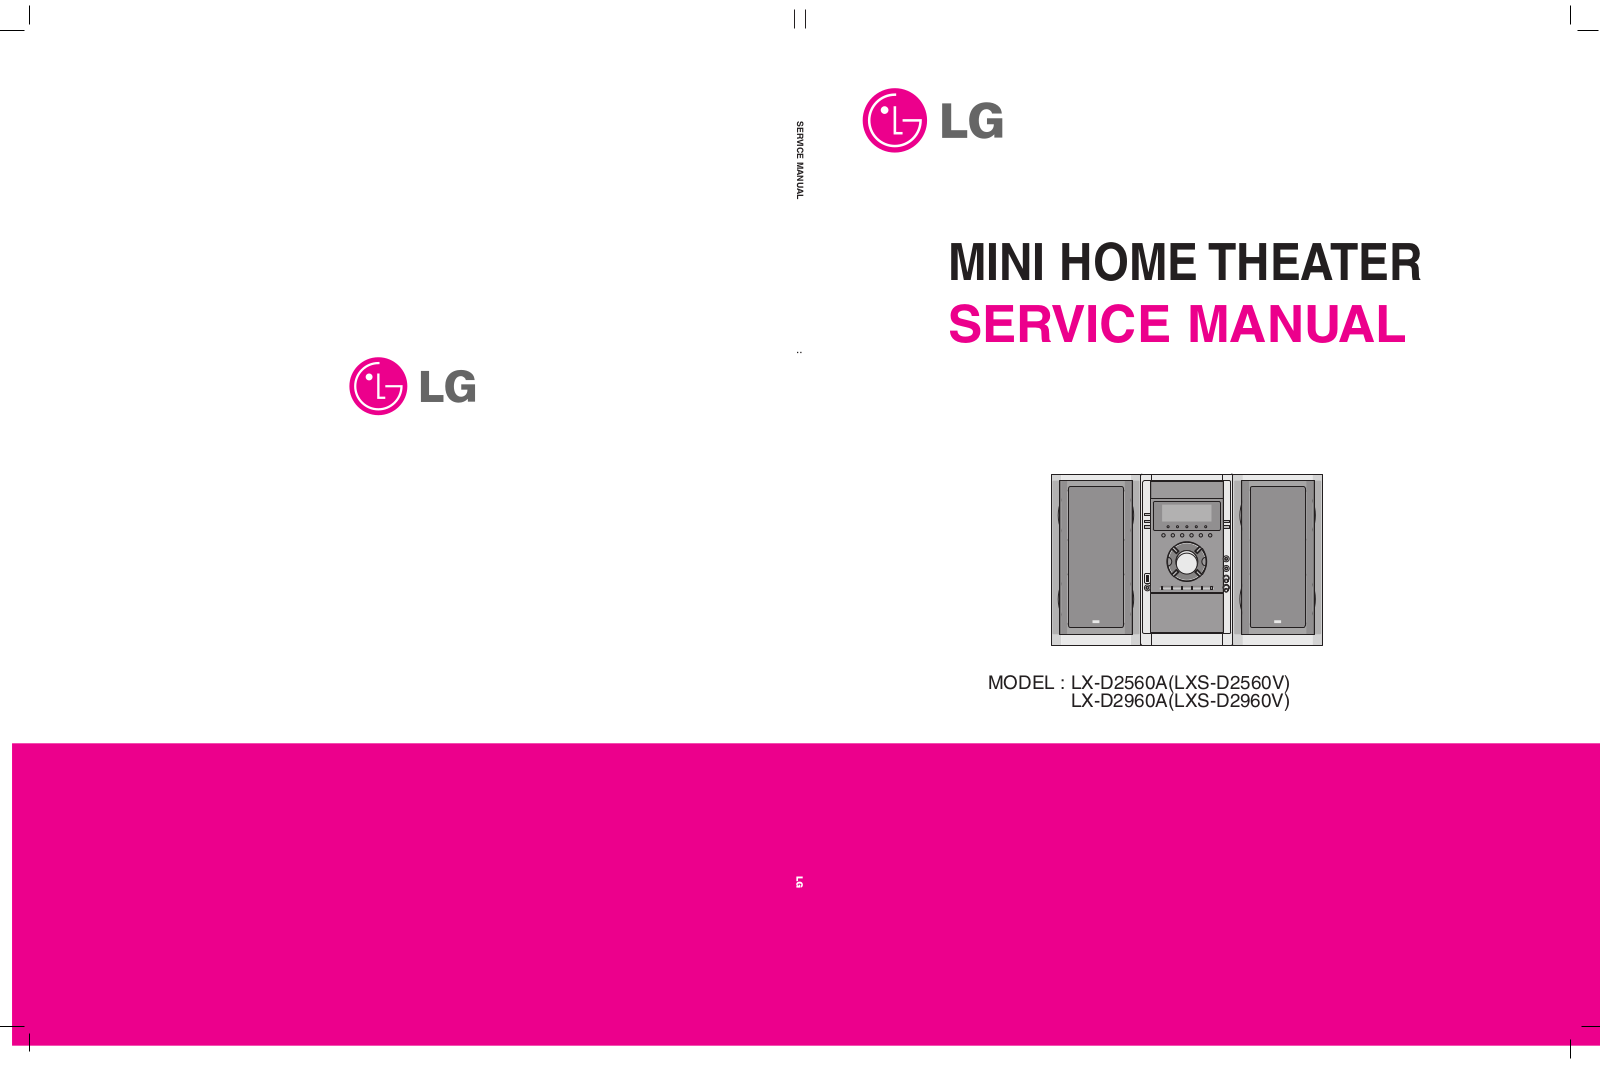 LG LX-D2560A, LXS-D2560V, LX-D2960A, LXS-D2960V Service Manual